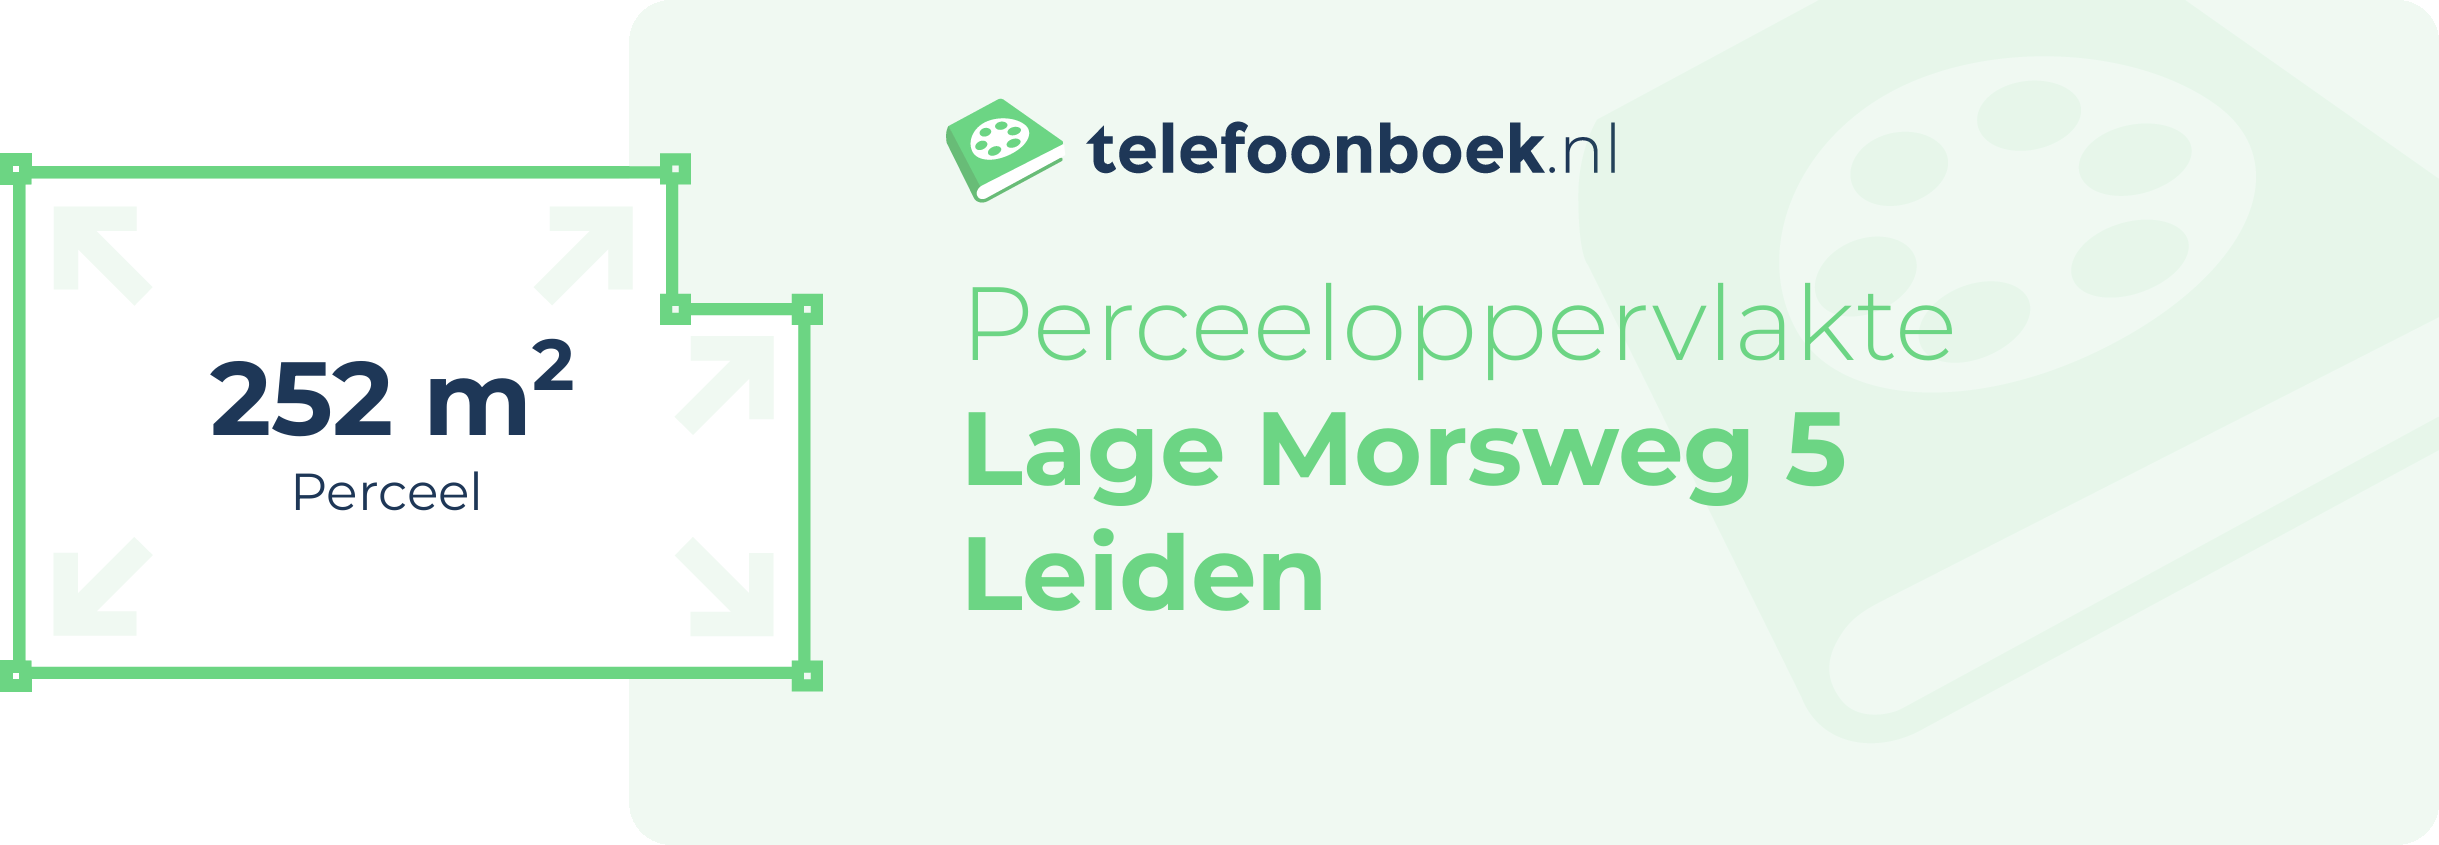 Perceeloppervlakte Lage Morsweg 5 Leiden